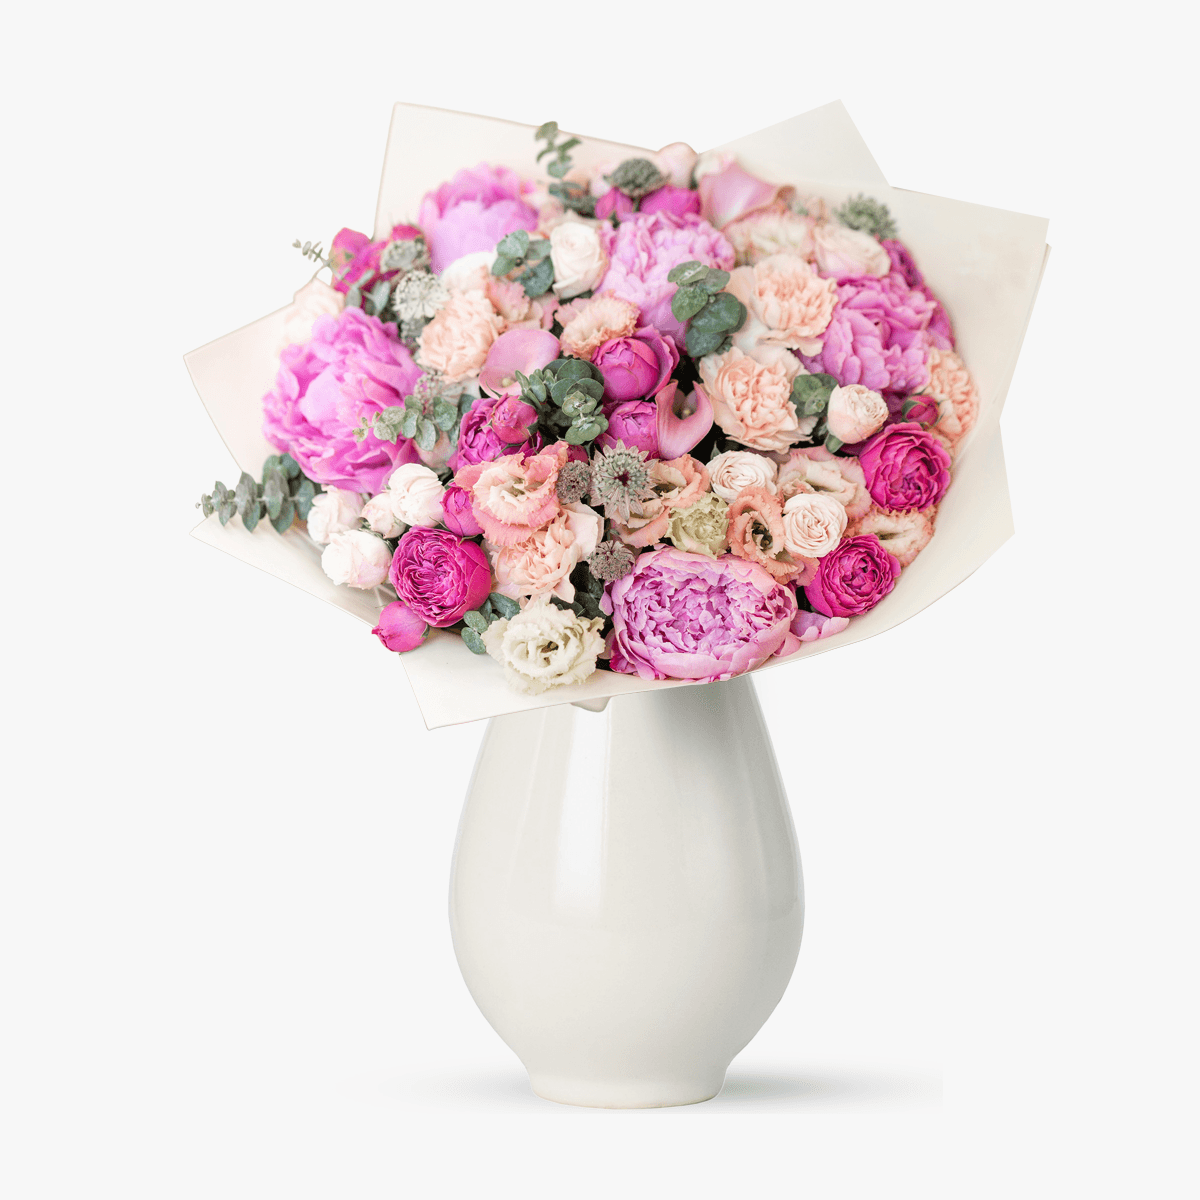 Buchet de bujori, hortensie si trandafiri – Premium Buchet